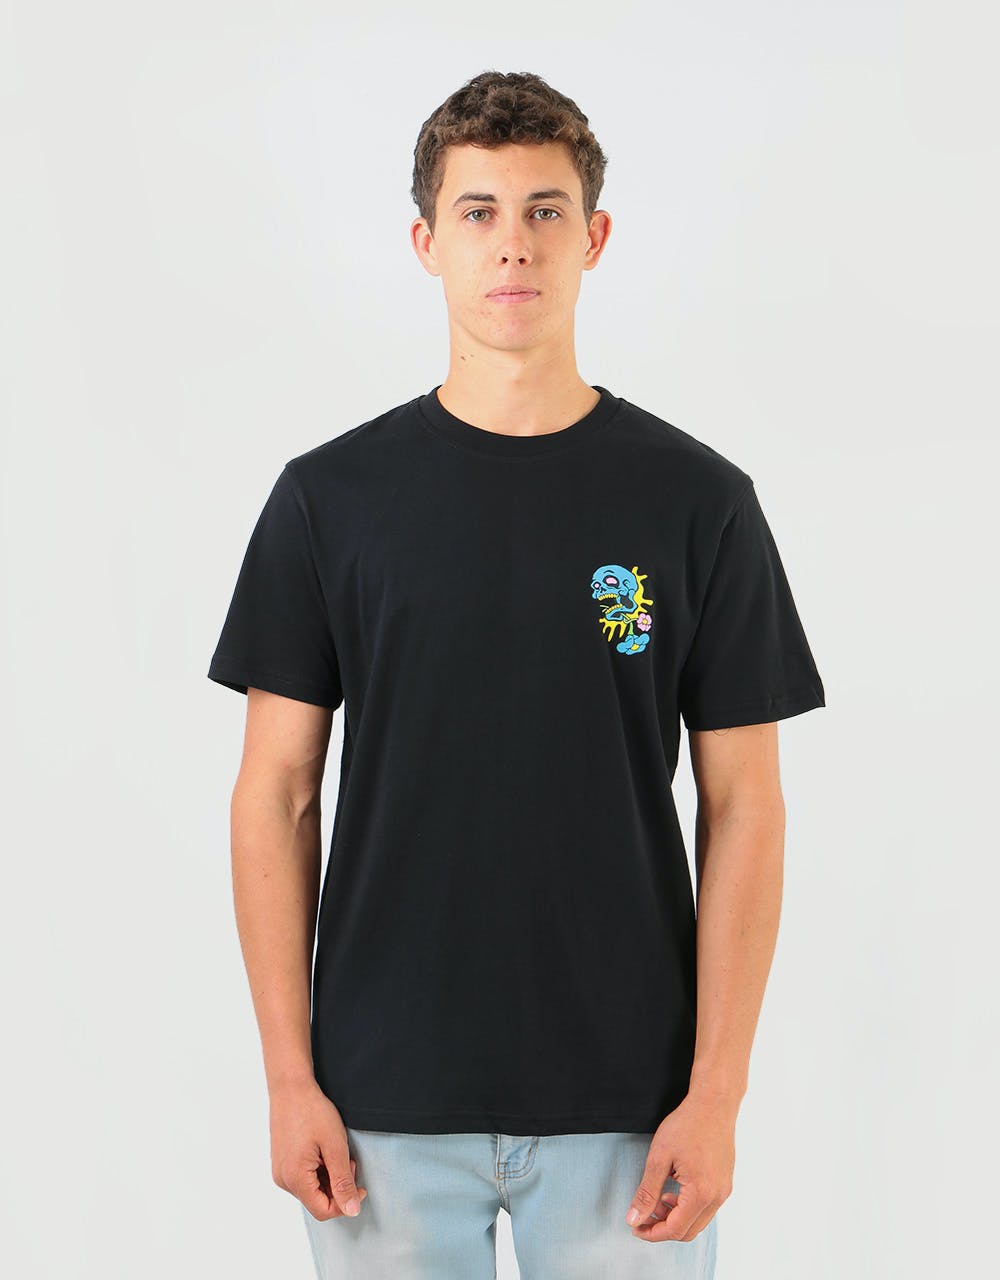 Santa Cruz Baked Dot T-Shirt - Black